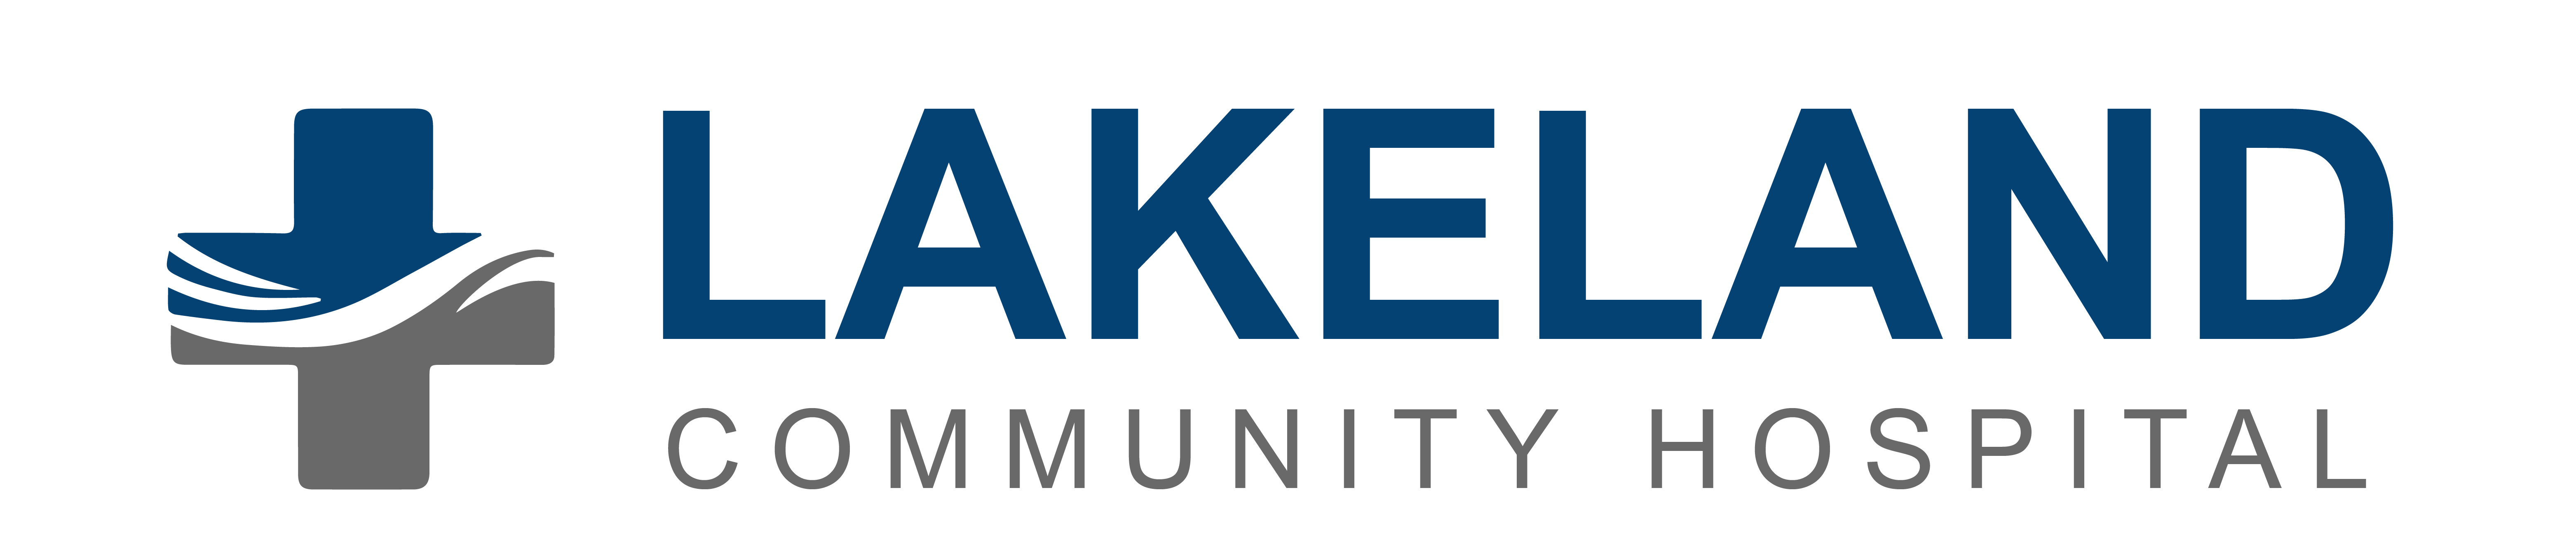 Lakeland Community Hospital - Logo (1)_Logo 3_Colored_092622-06